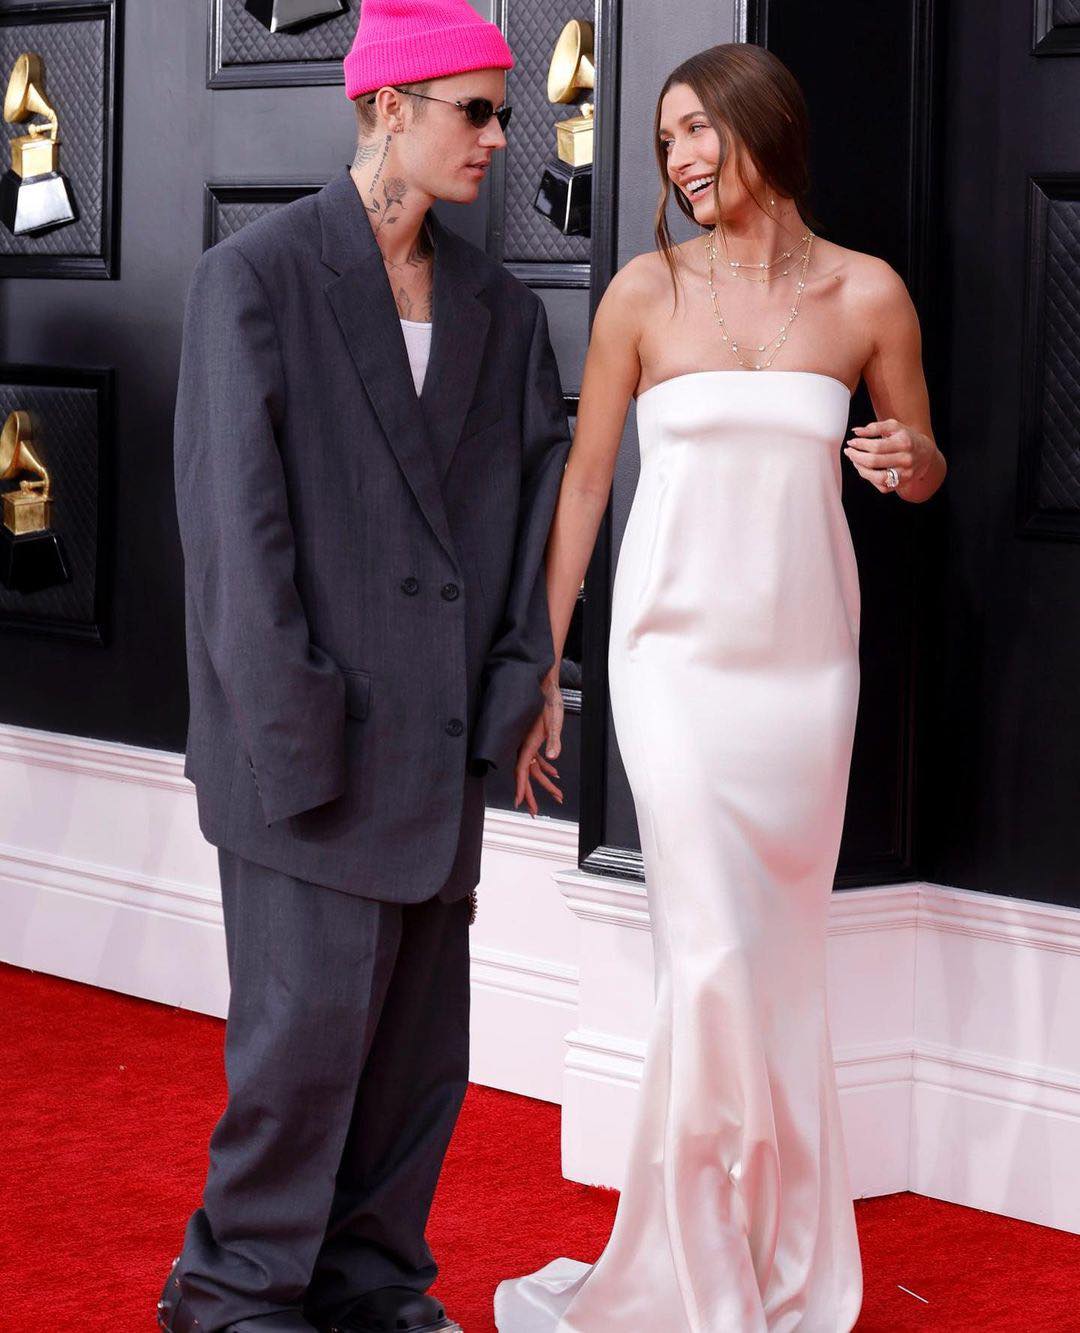 Anh chàng diện suit của nhà Balenciaga trong khi vợ người mẫu quyến rũ trong chiếc váy Saint Laurent.